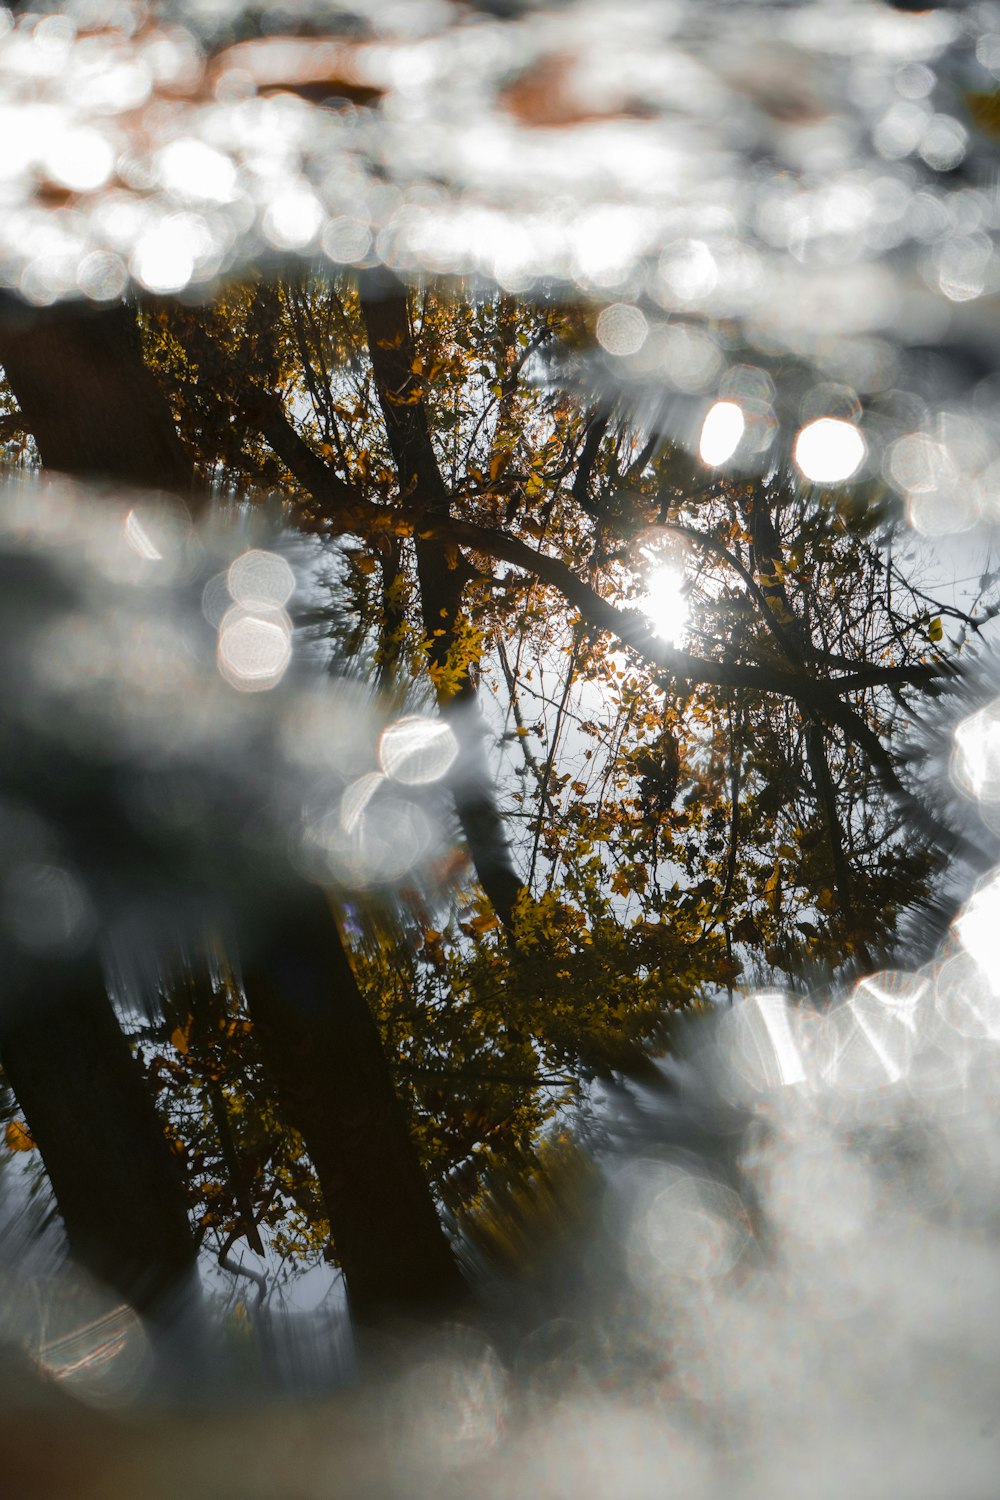 水たまりに映る樹木の反射のセレクティブフォーカス撮影